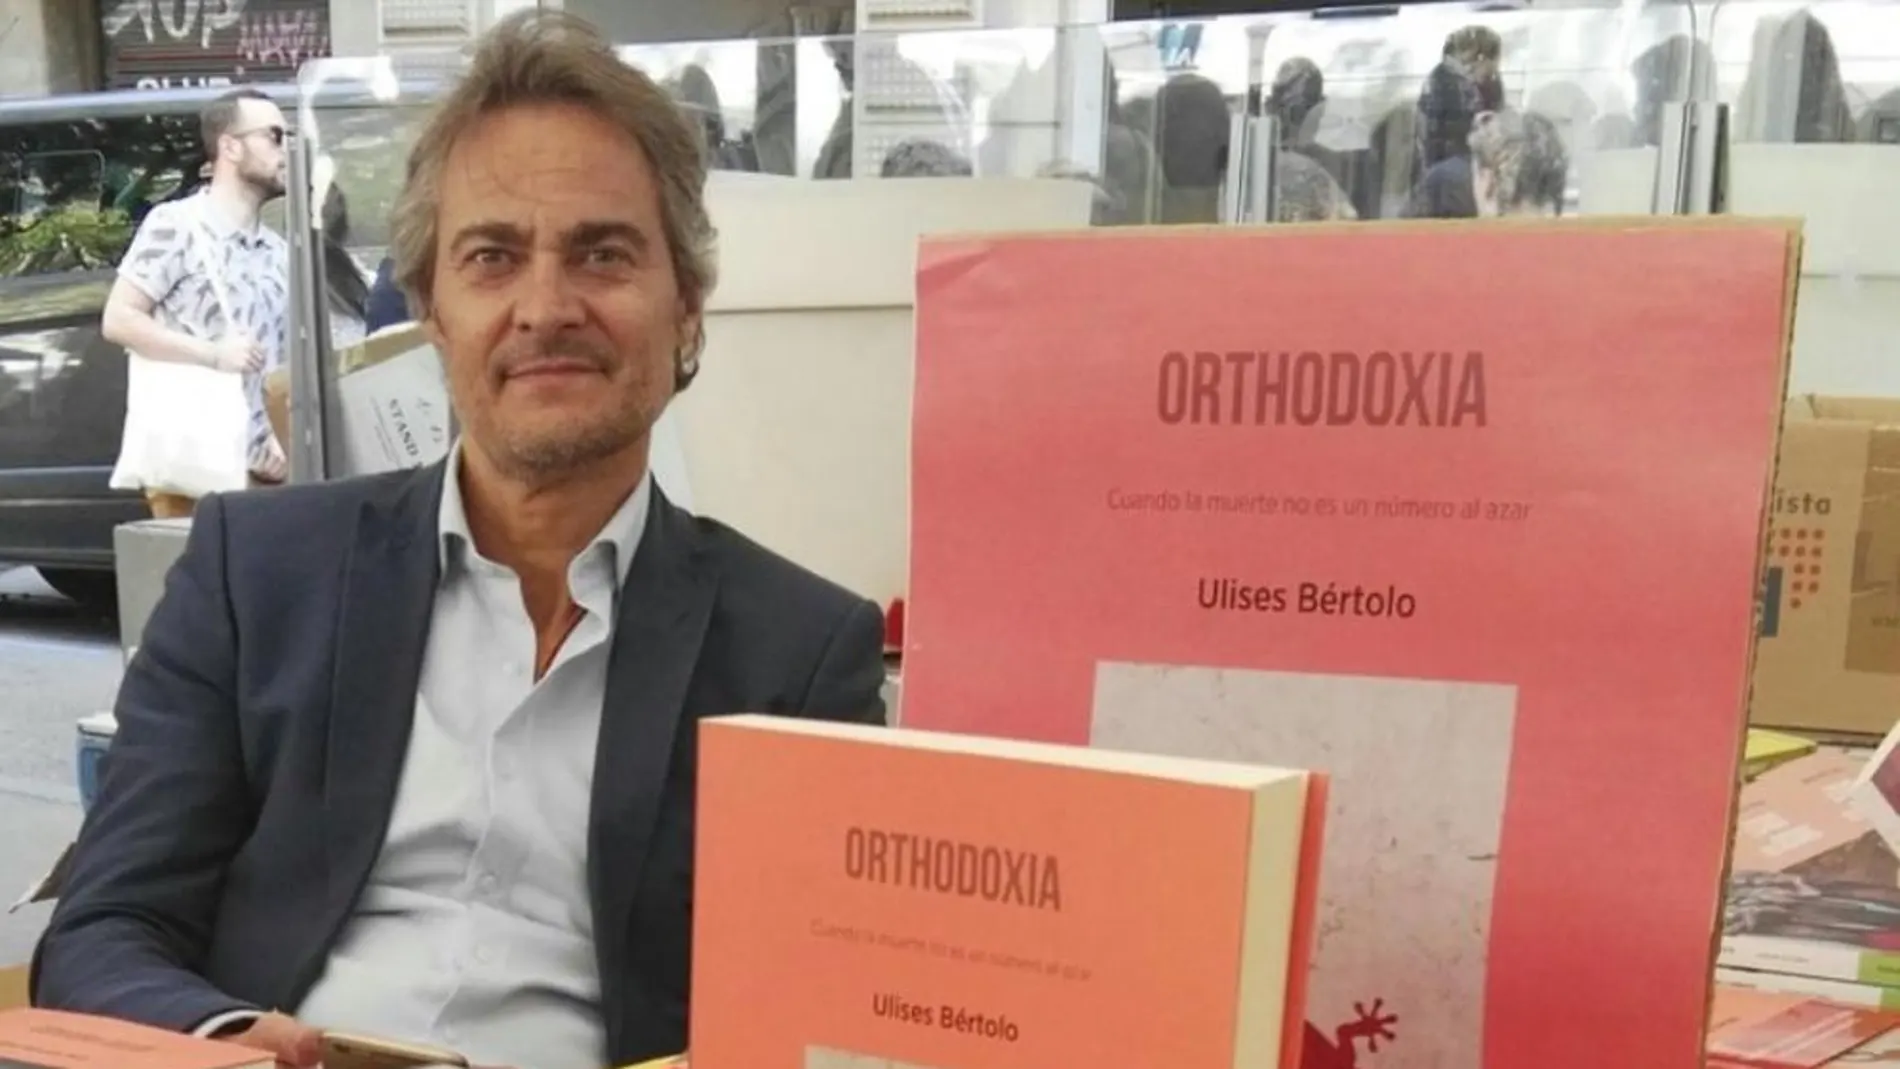 «Orthodoxia» es la segunda novela del abogado y profesor de Derecho Ulises Bértolo